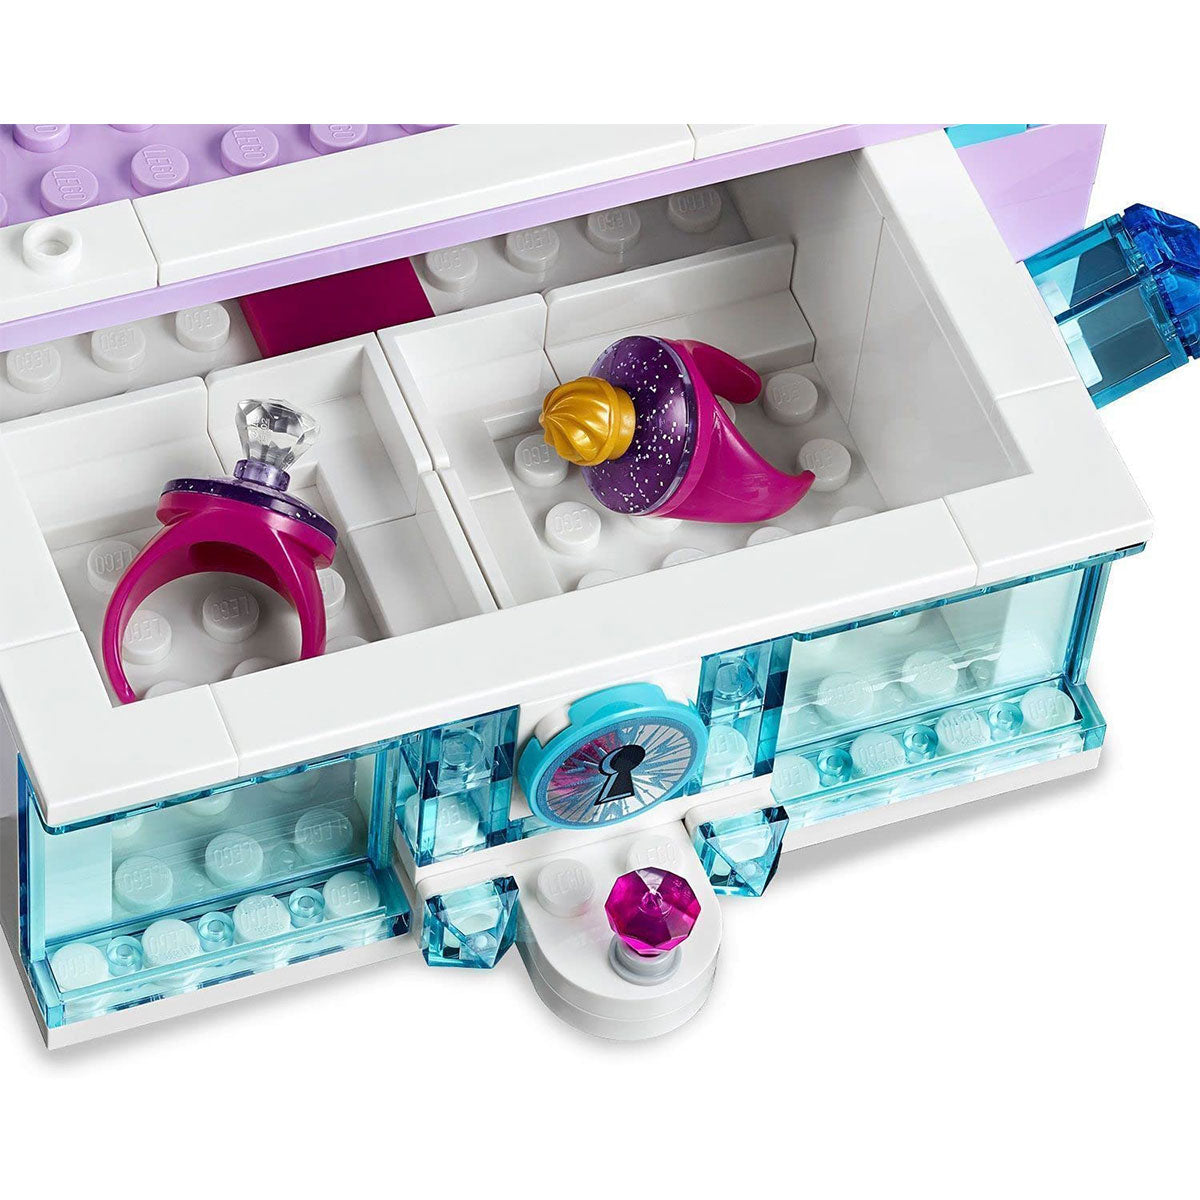 LEGO - Disney Frozen II Elsa Jewelry Box Creation 41168